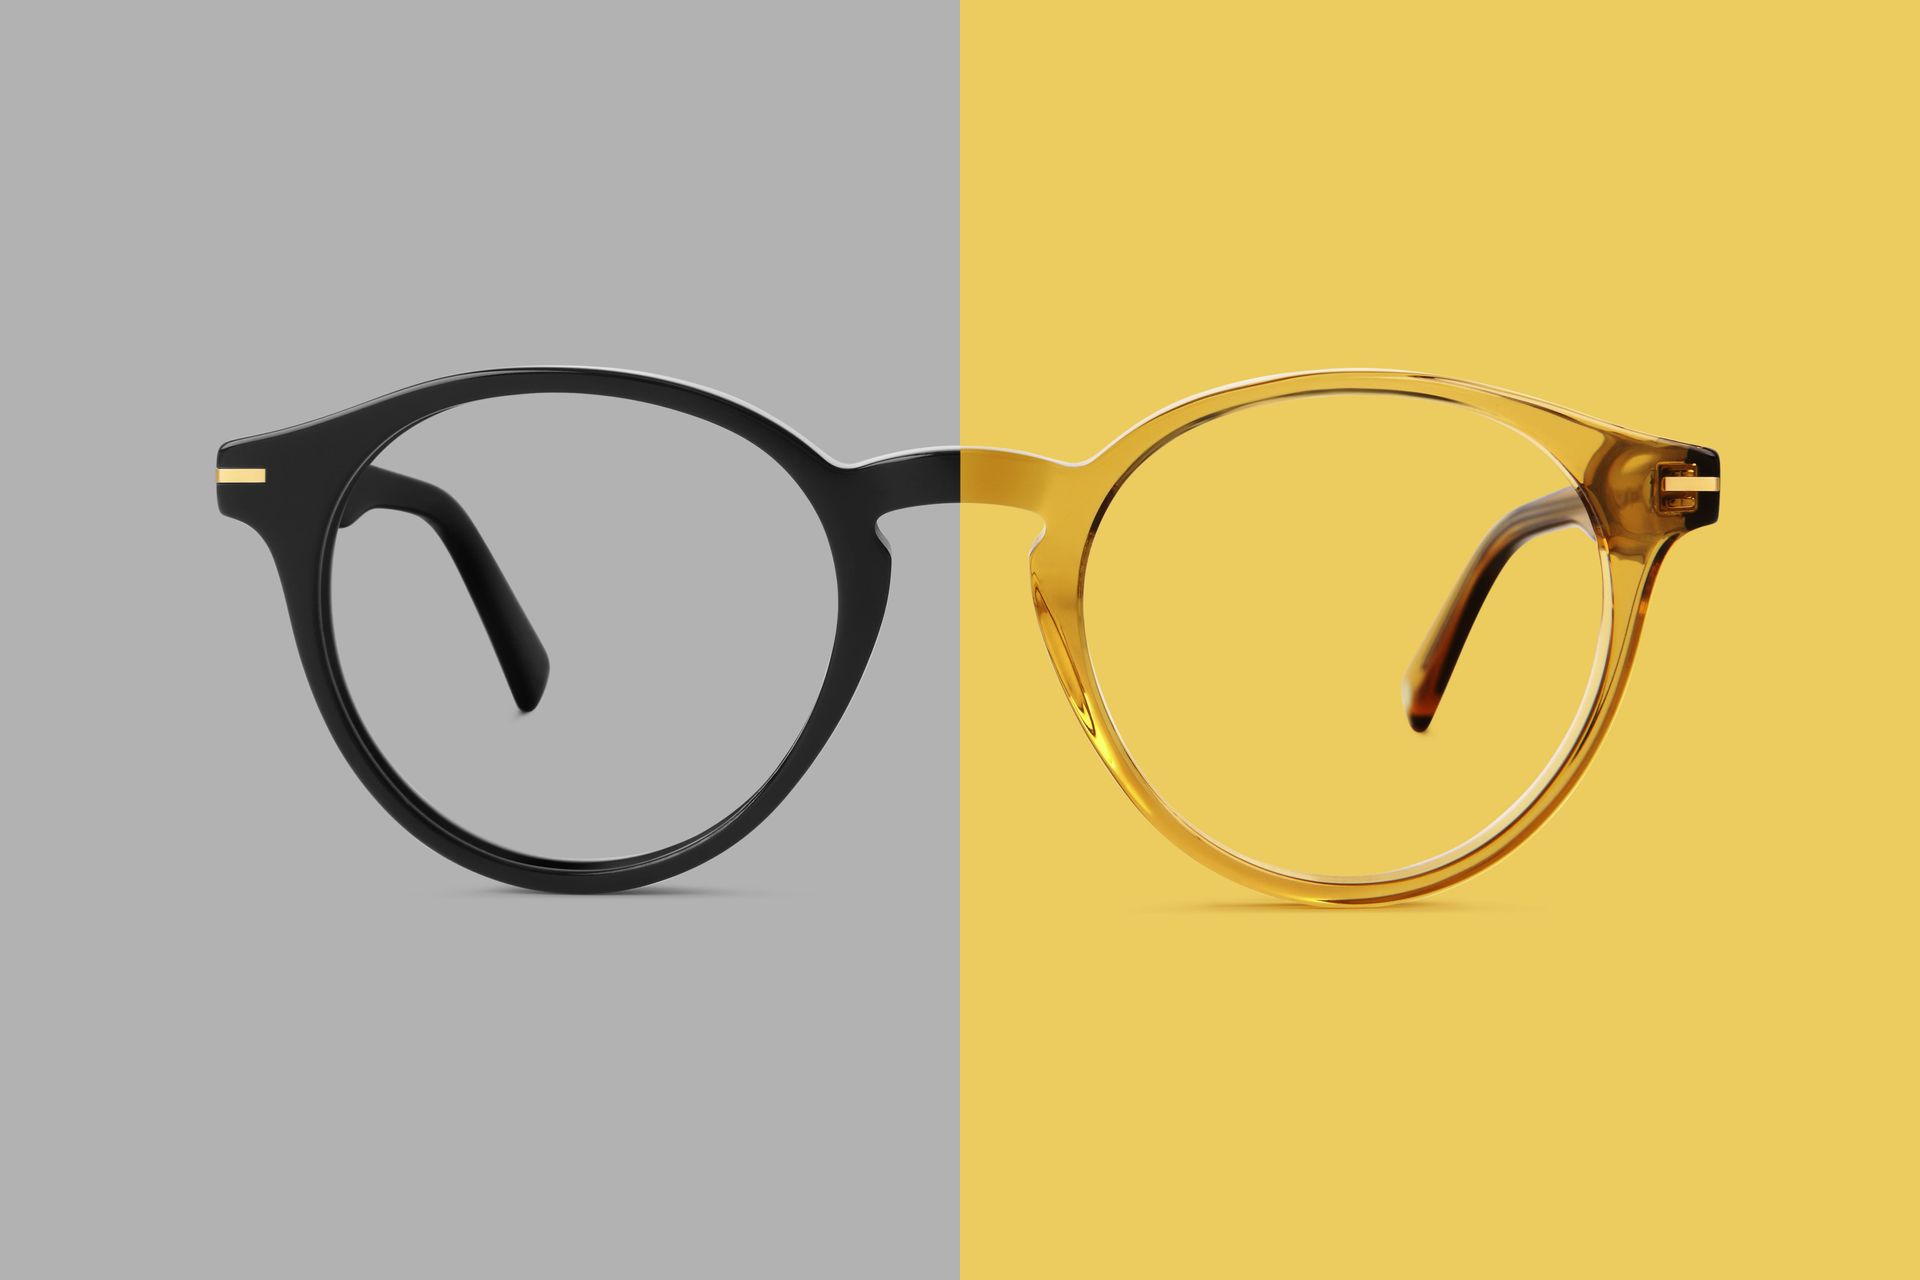 Paire de lunettes sur fond gris et jaune